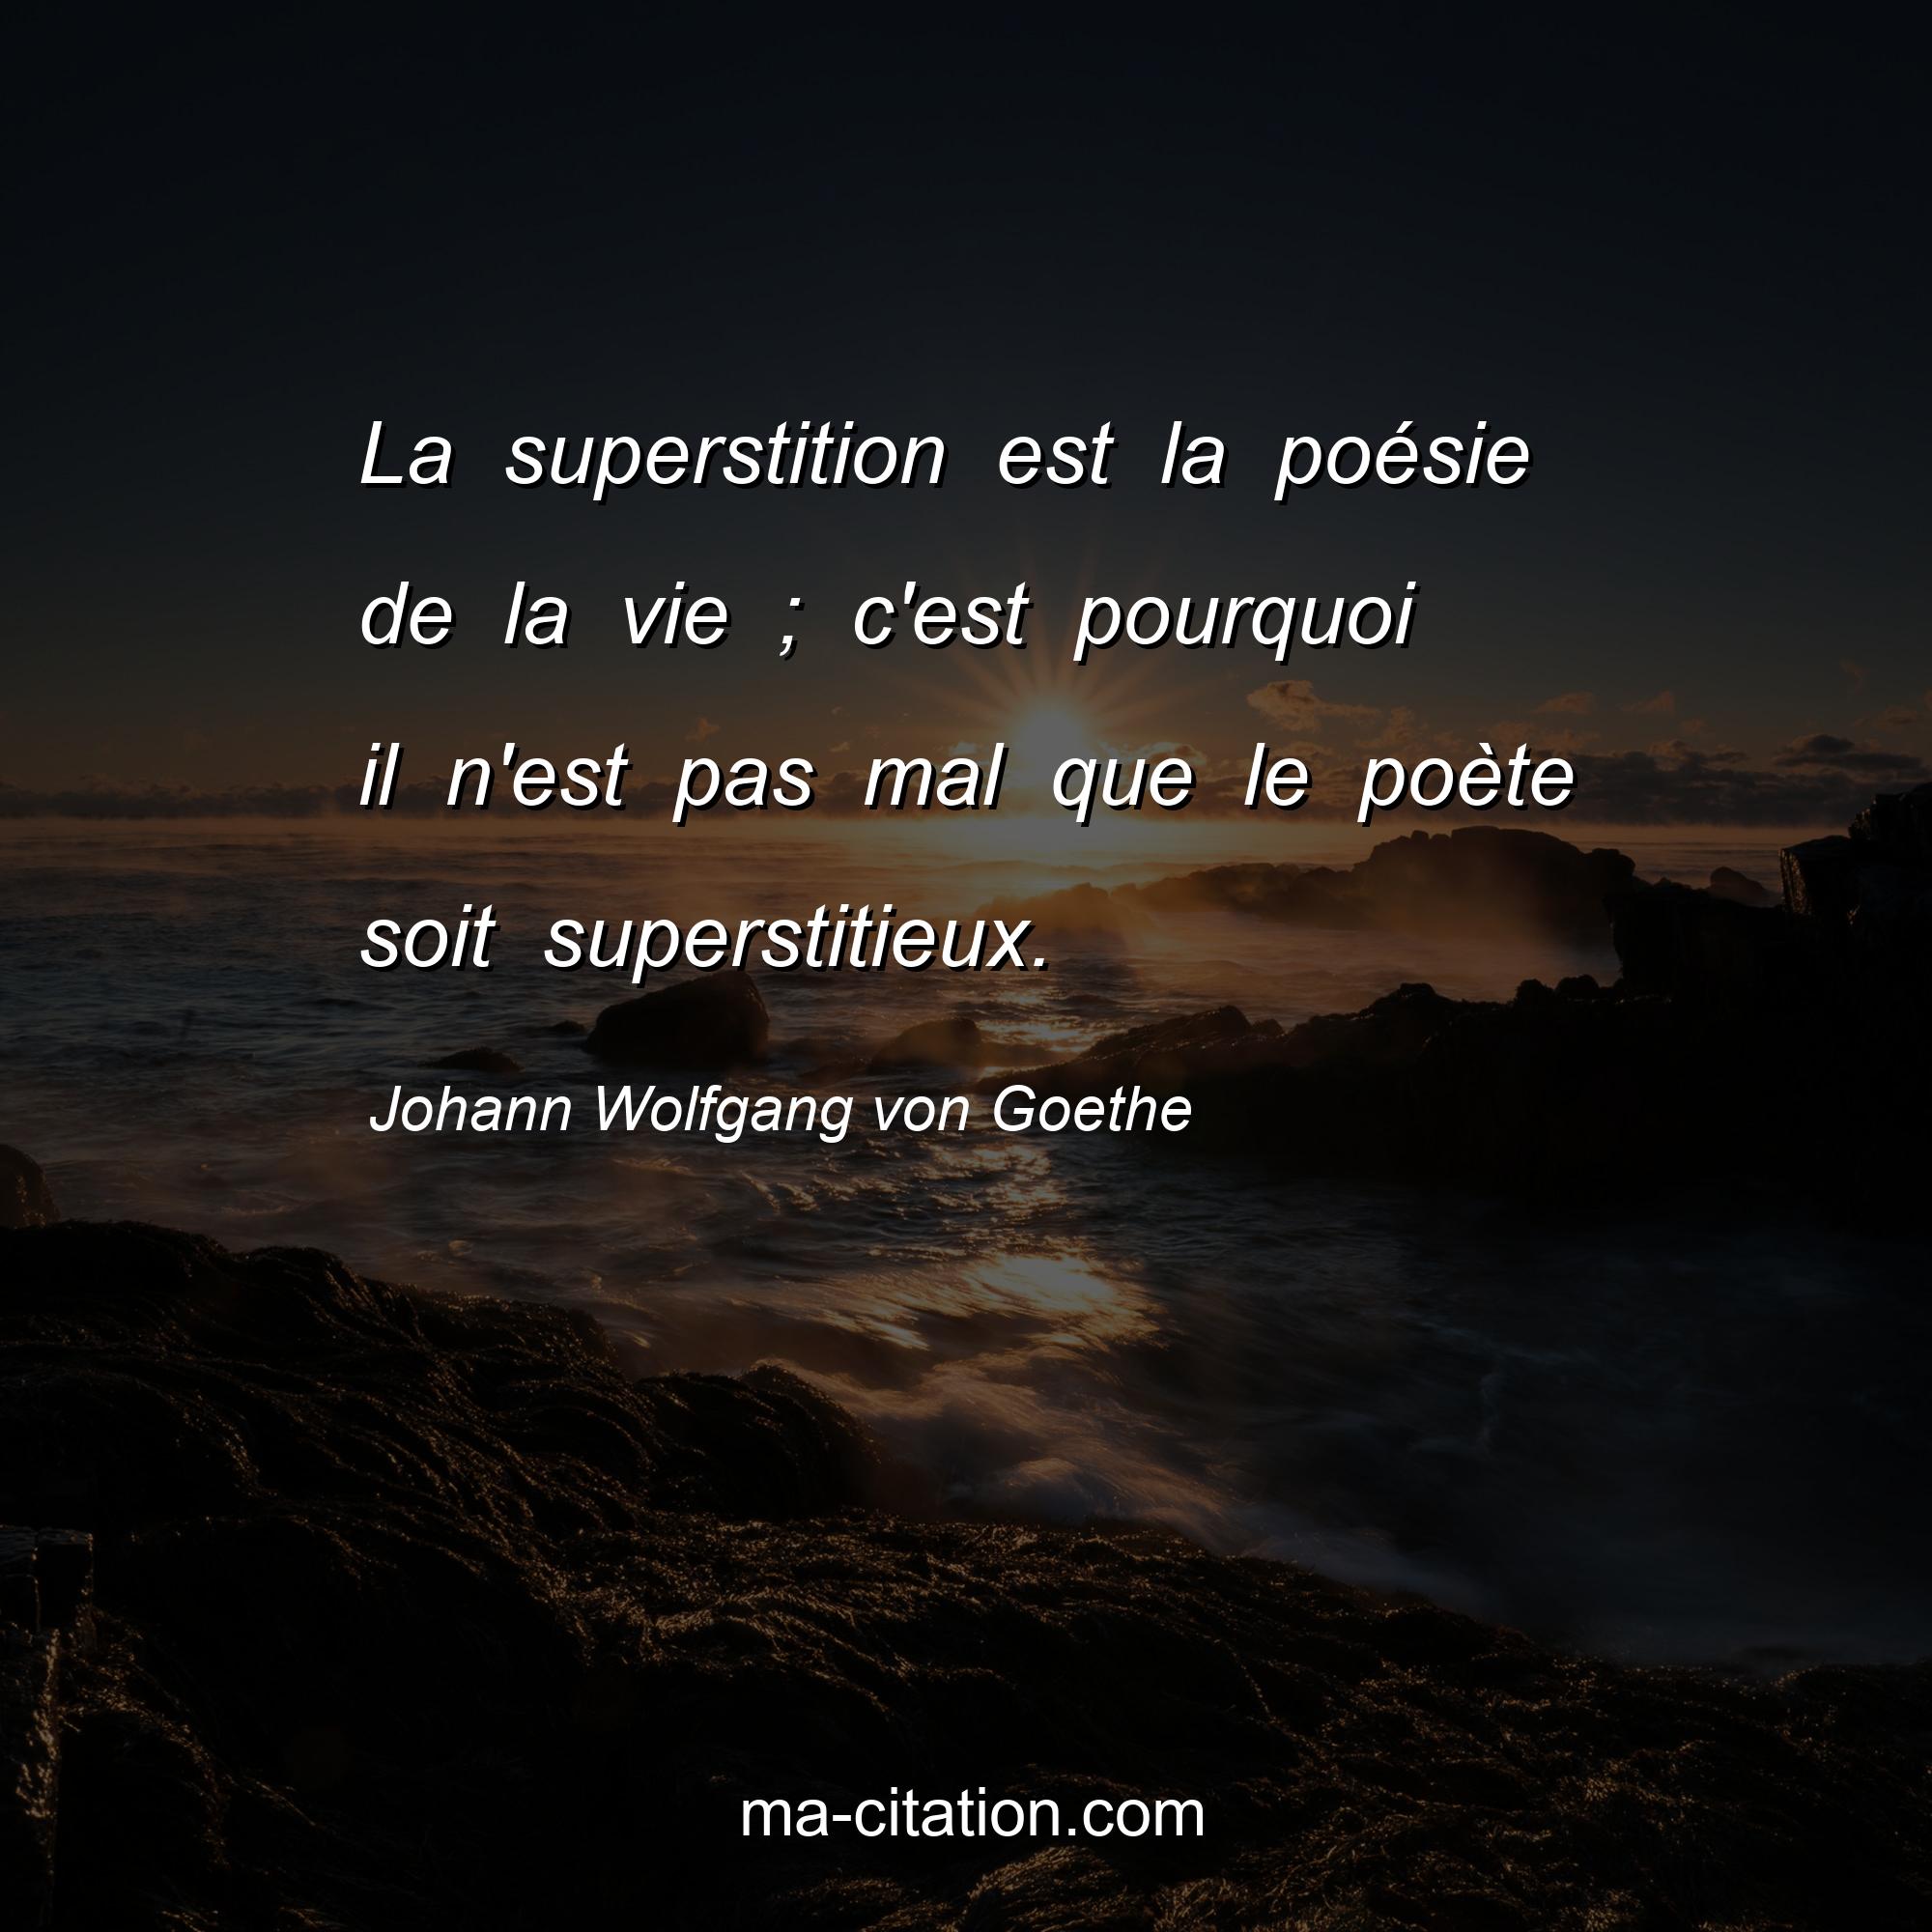 Johann Wolfgang von Goethe : La superstition est la poésie de la vie ; c'est pourquoi il n'est pas mal que le poète soit superstitieux.